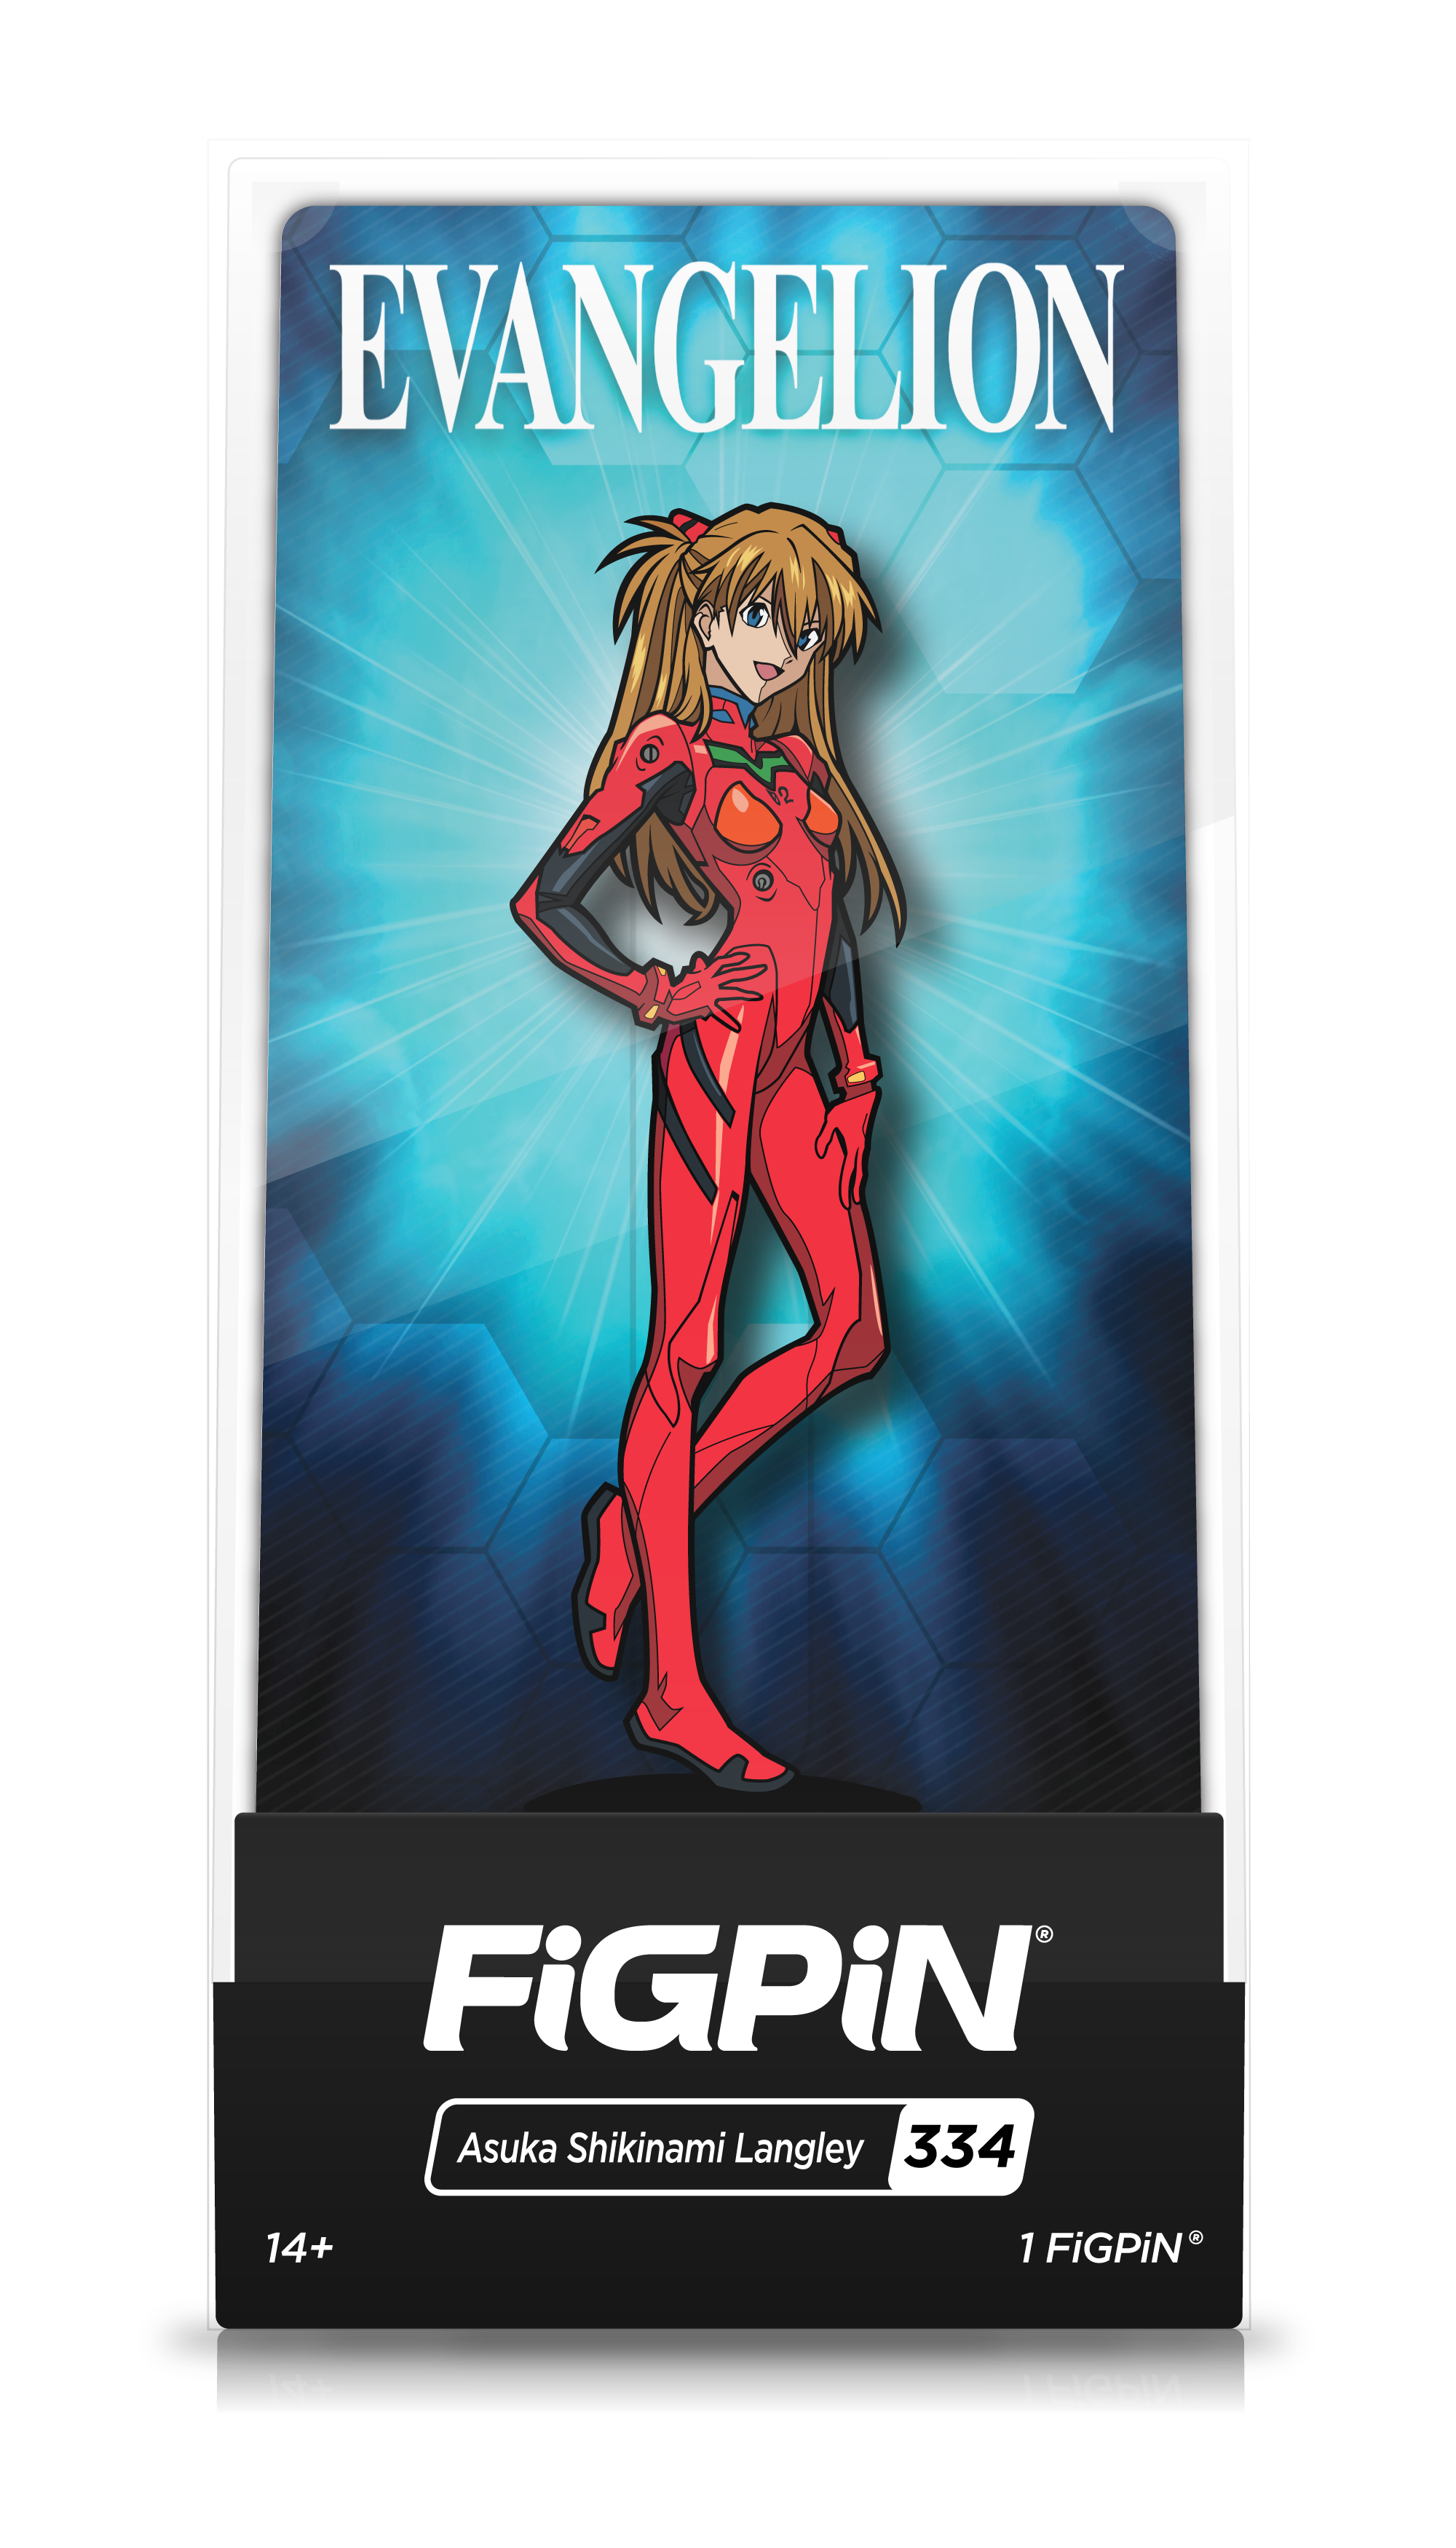 EVANGELION - FiGPiN - Asuka Shikinami Langley (#334)